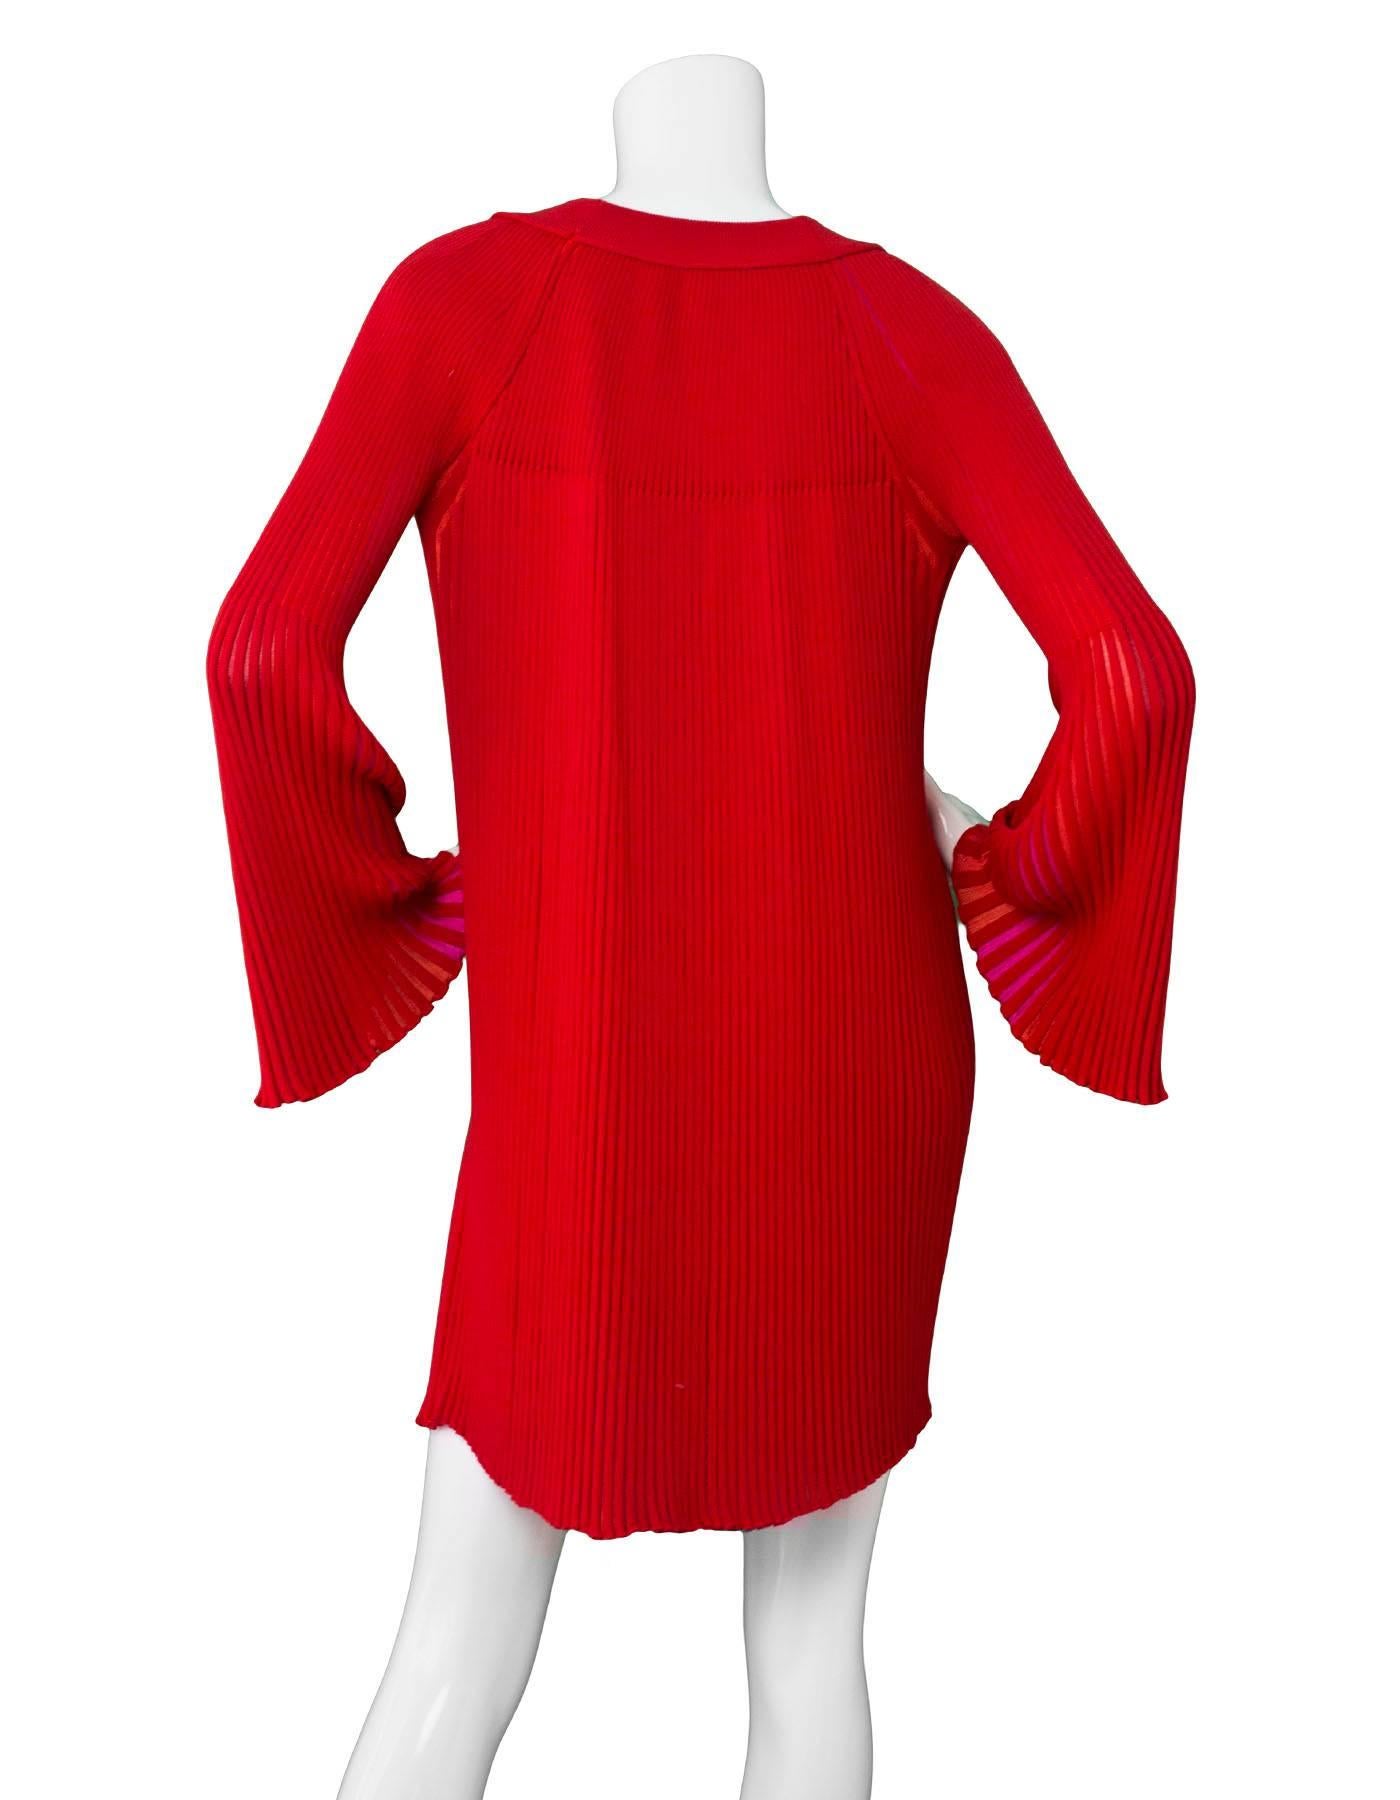 sonia rykiel red dress